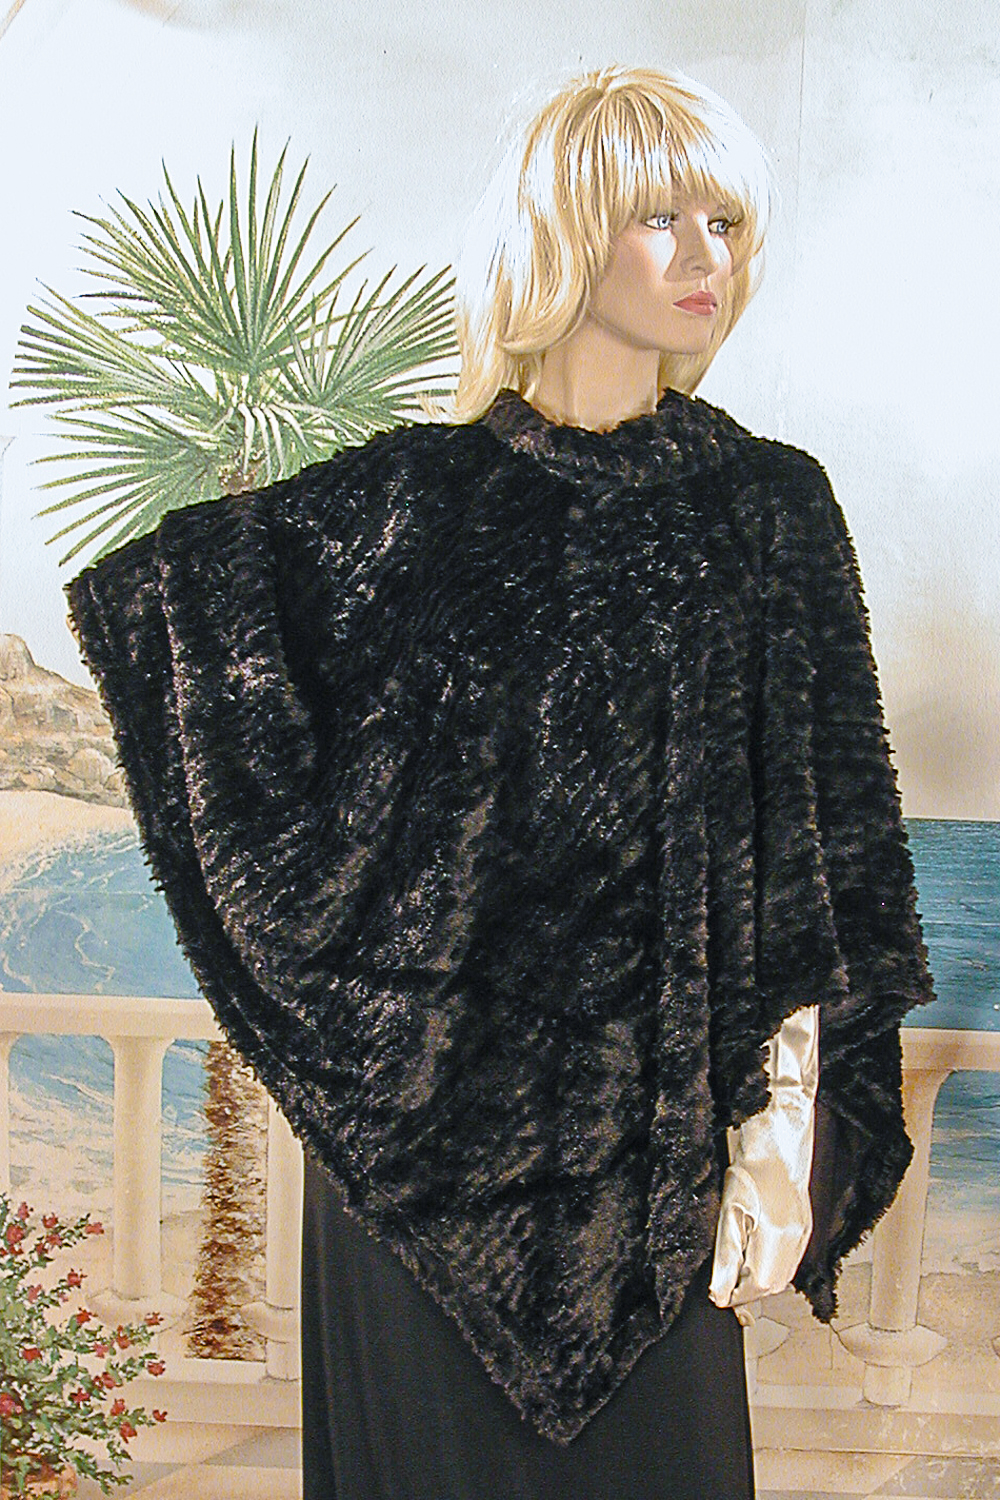 Fabulous Faux Fur Ponchos, a fashion accessorie - Evening Elegance